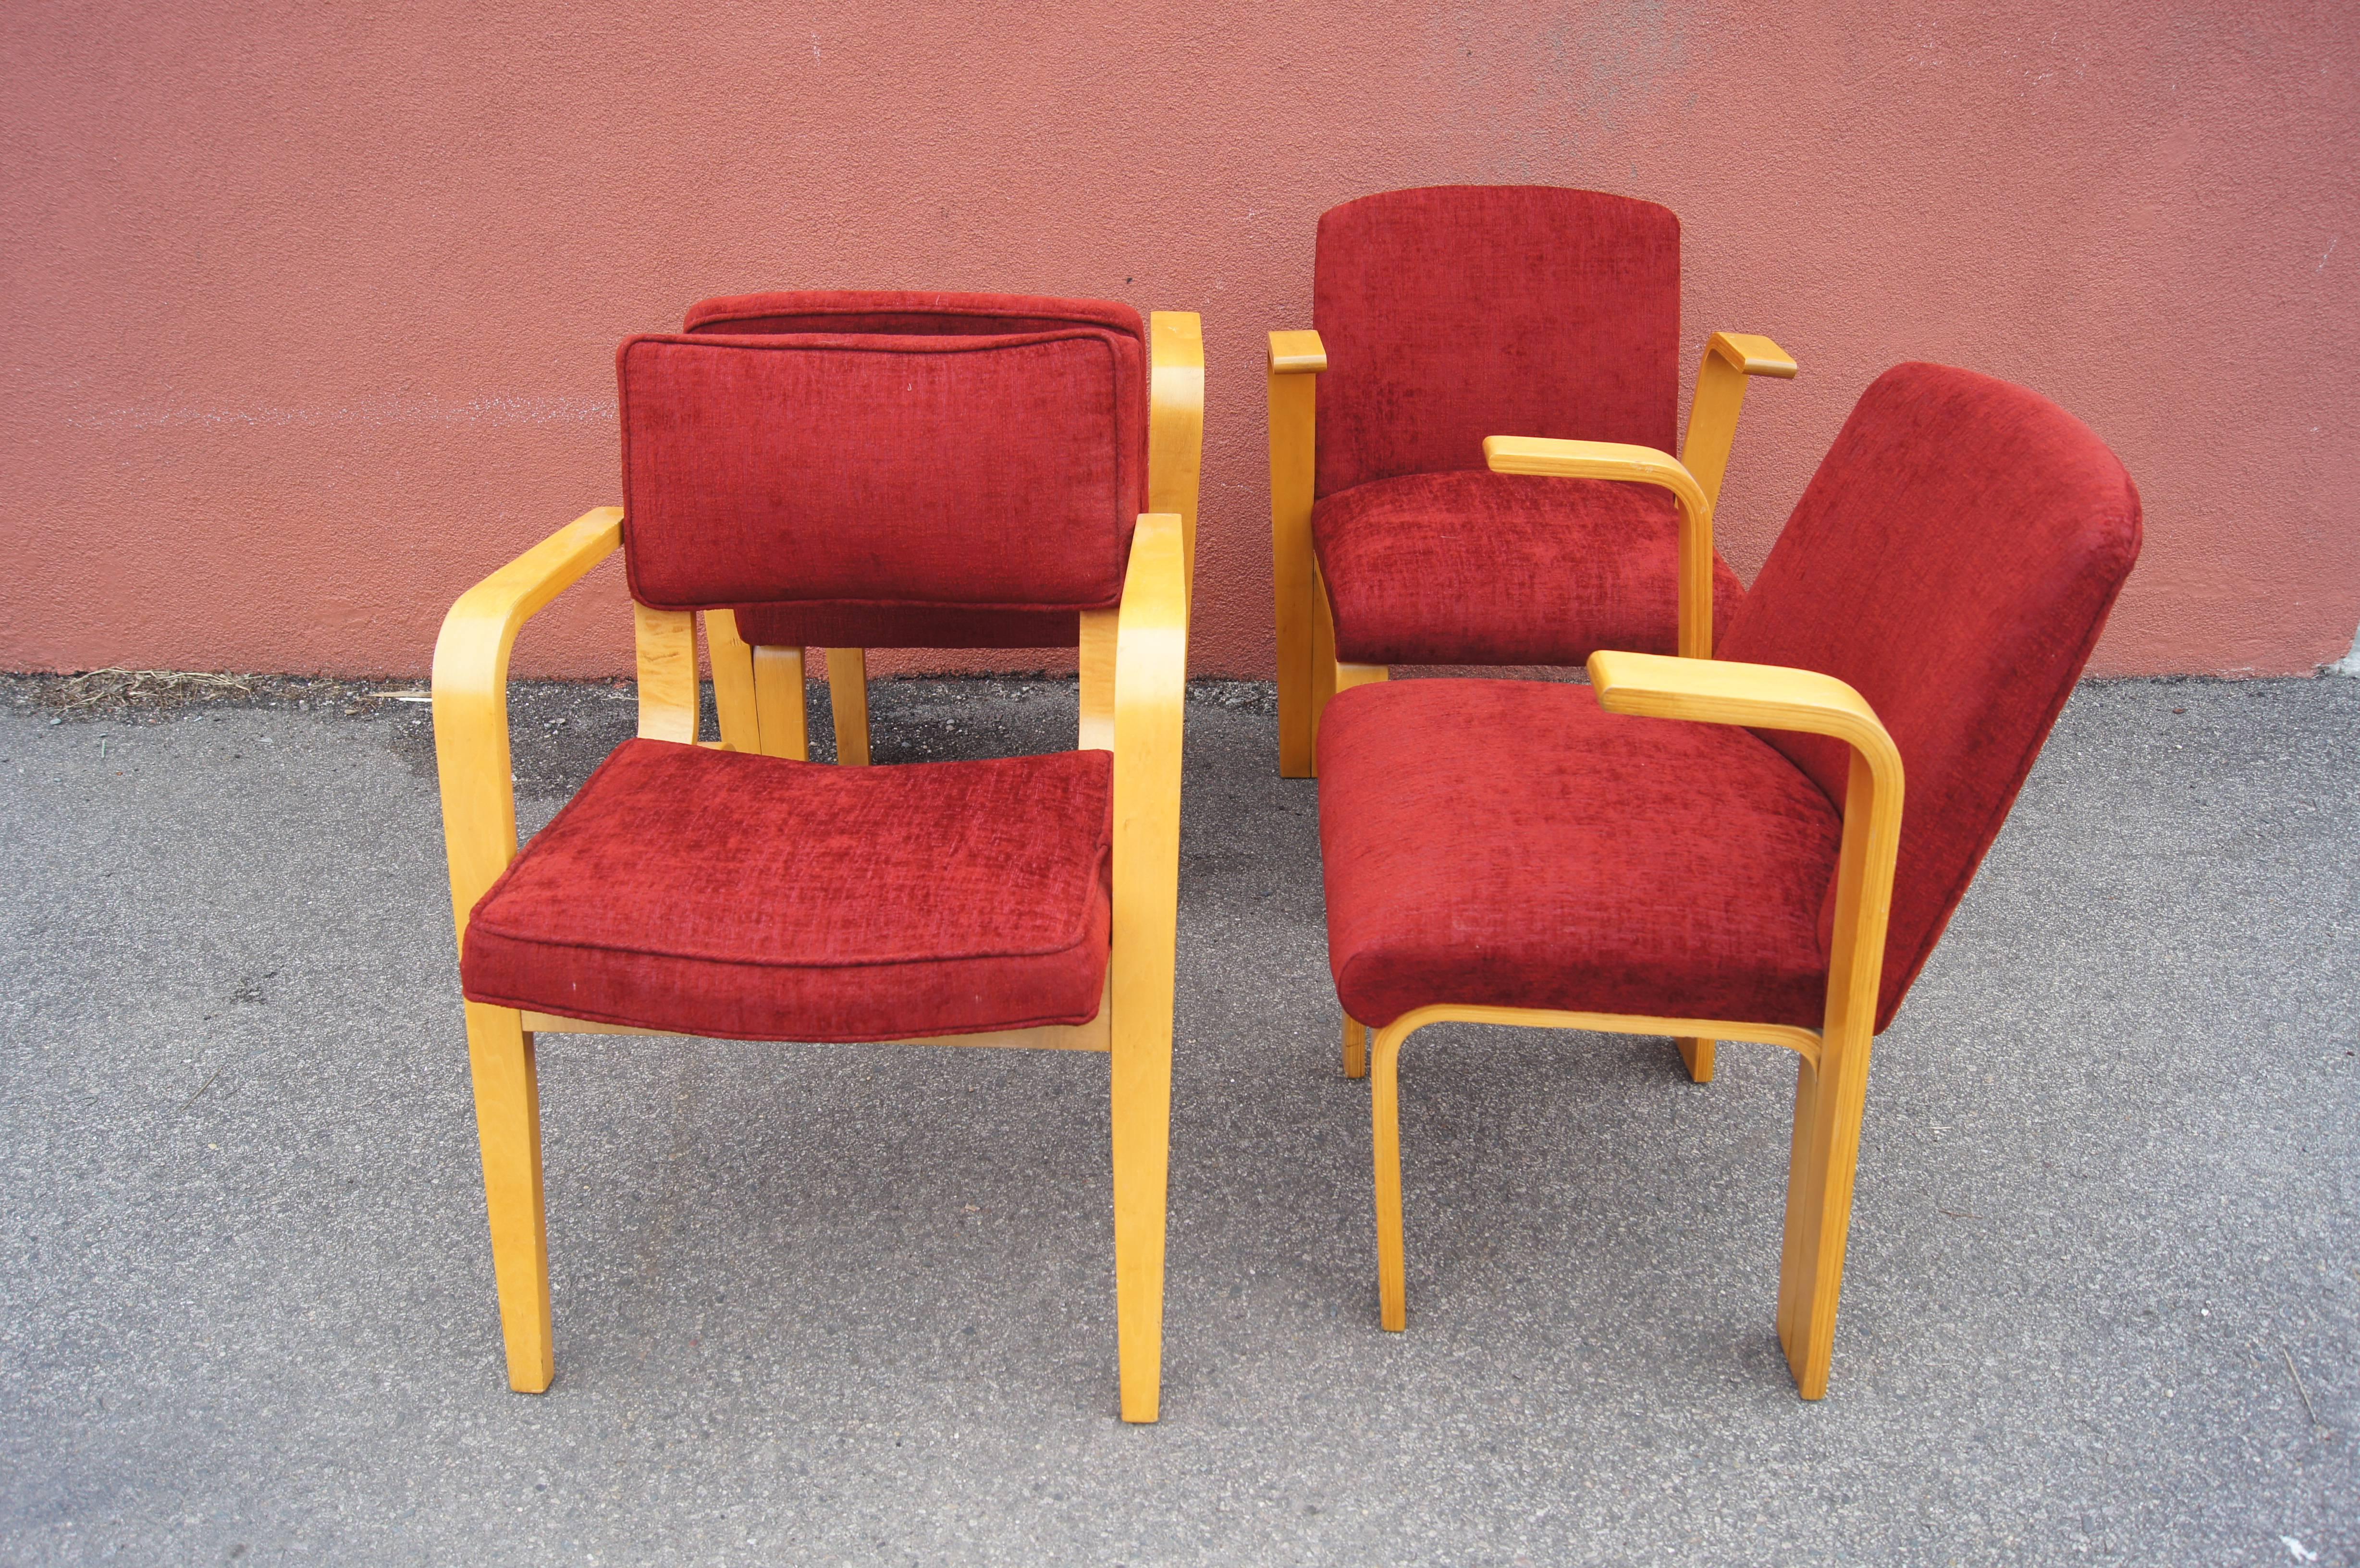 Diese vier Sessel aus Birkenholz sind mit einem weichen Stoff in leuchtendem Rot gepolstert und gehören zu den klassischen modernistischen Bughölzern von Thonet. Drei Stühle, die Joe Atkinson zugeschrieben werden, haben massive Rückenlehnen und